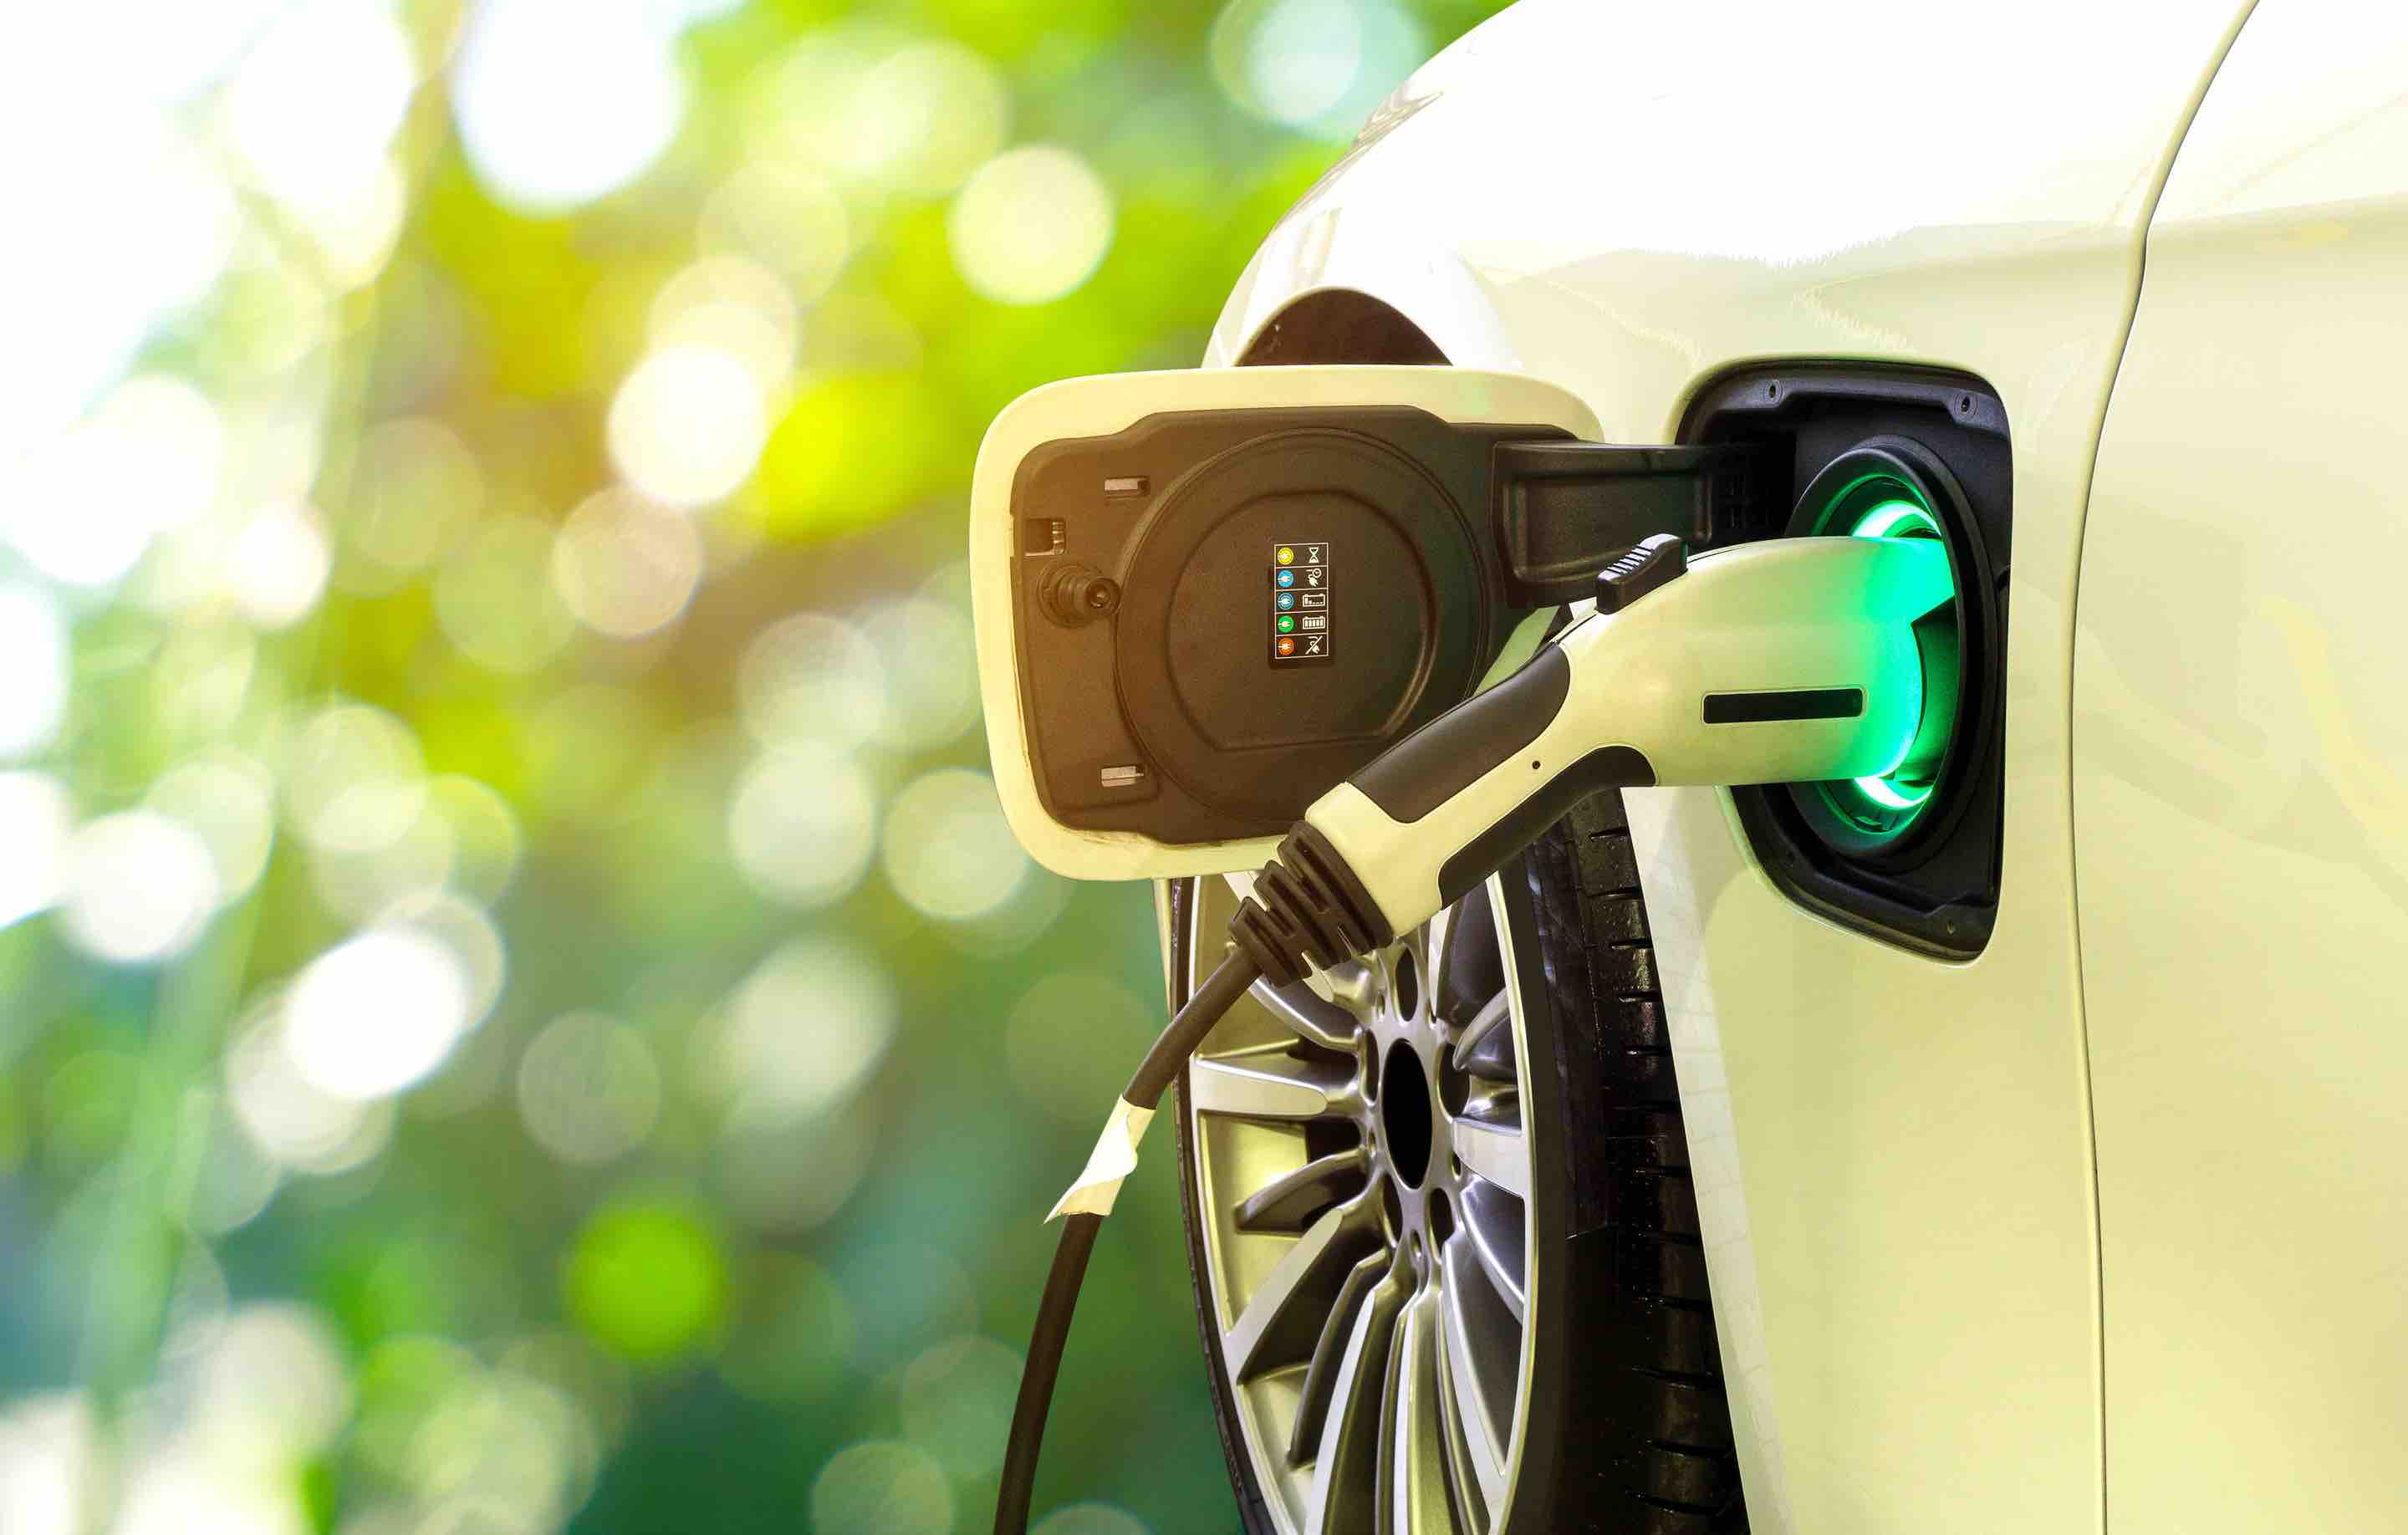 خودروی برقی خود را در خانه شارژ کنید